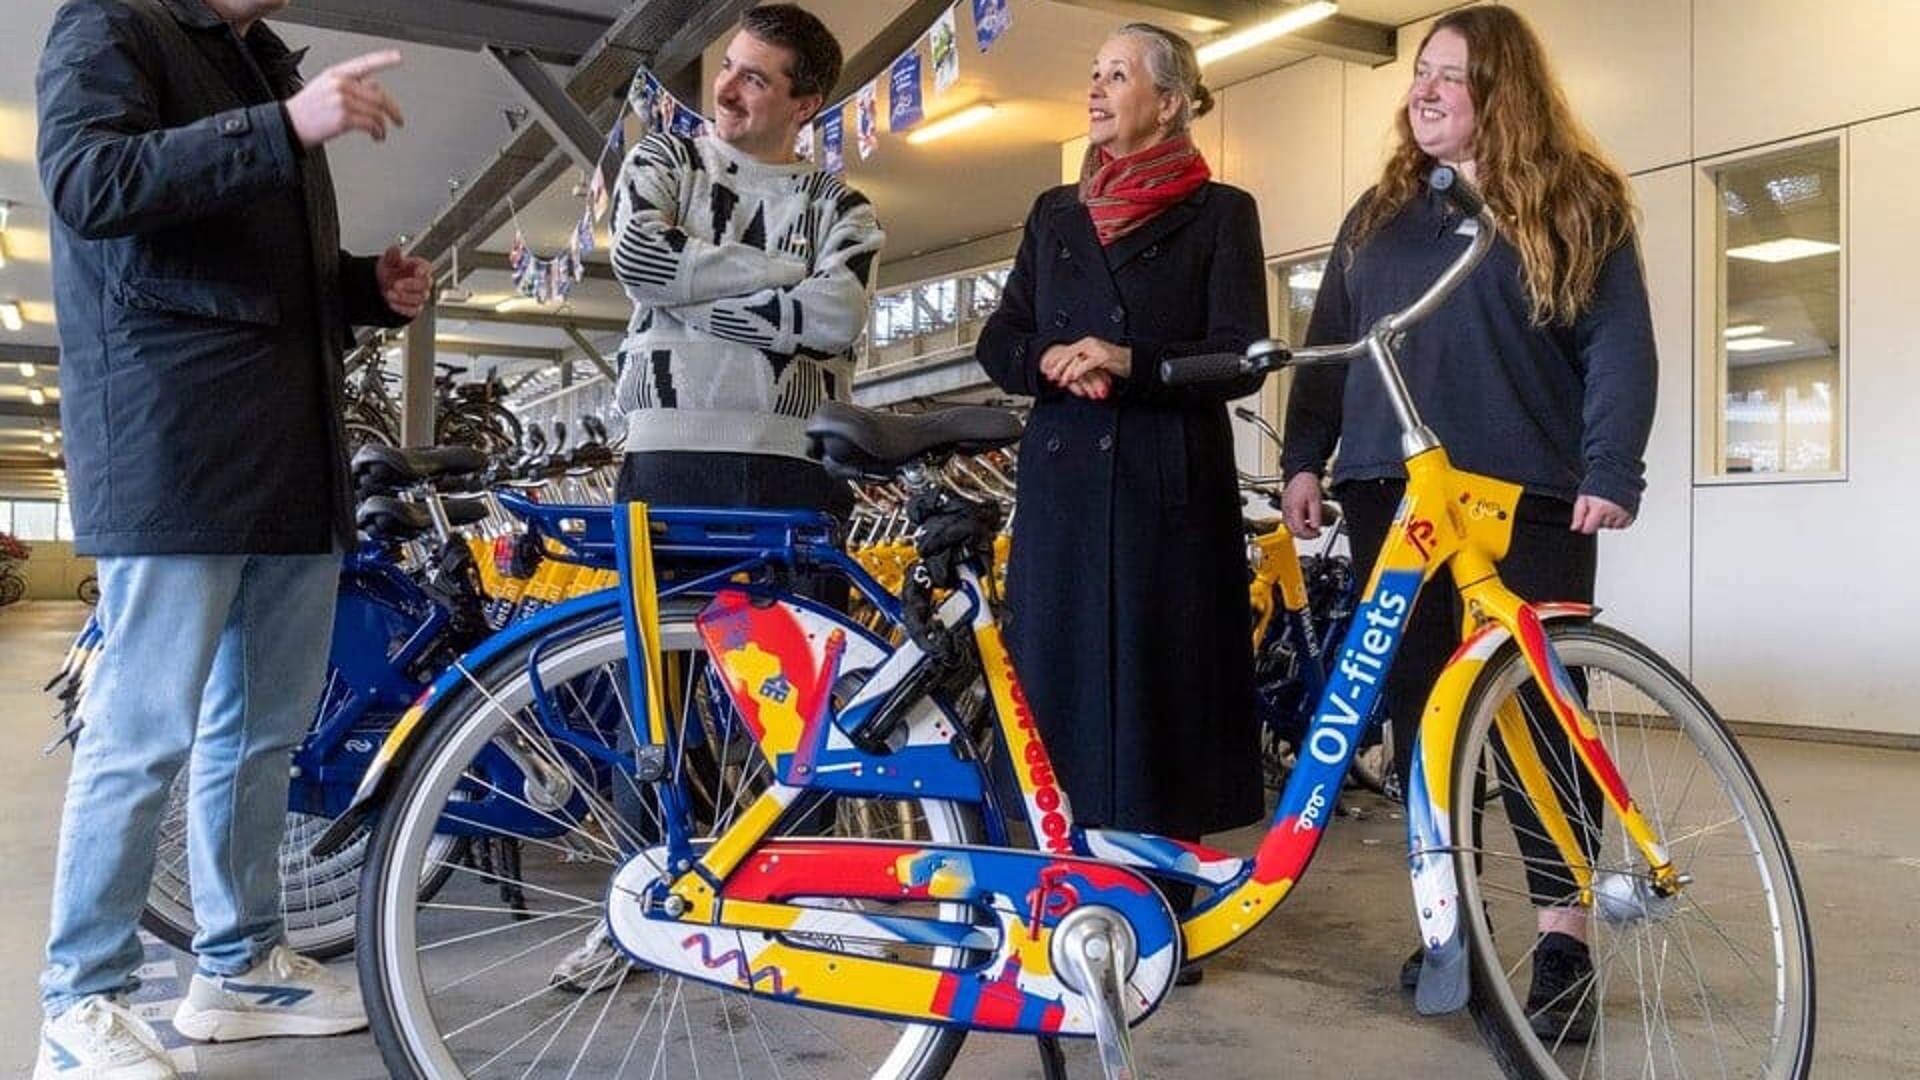 De fiets op het station van Alkmaar wordt onthuld. 